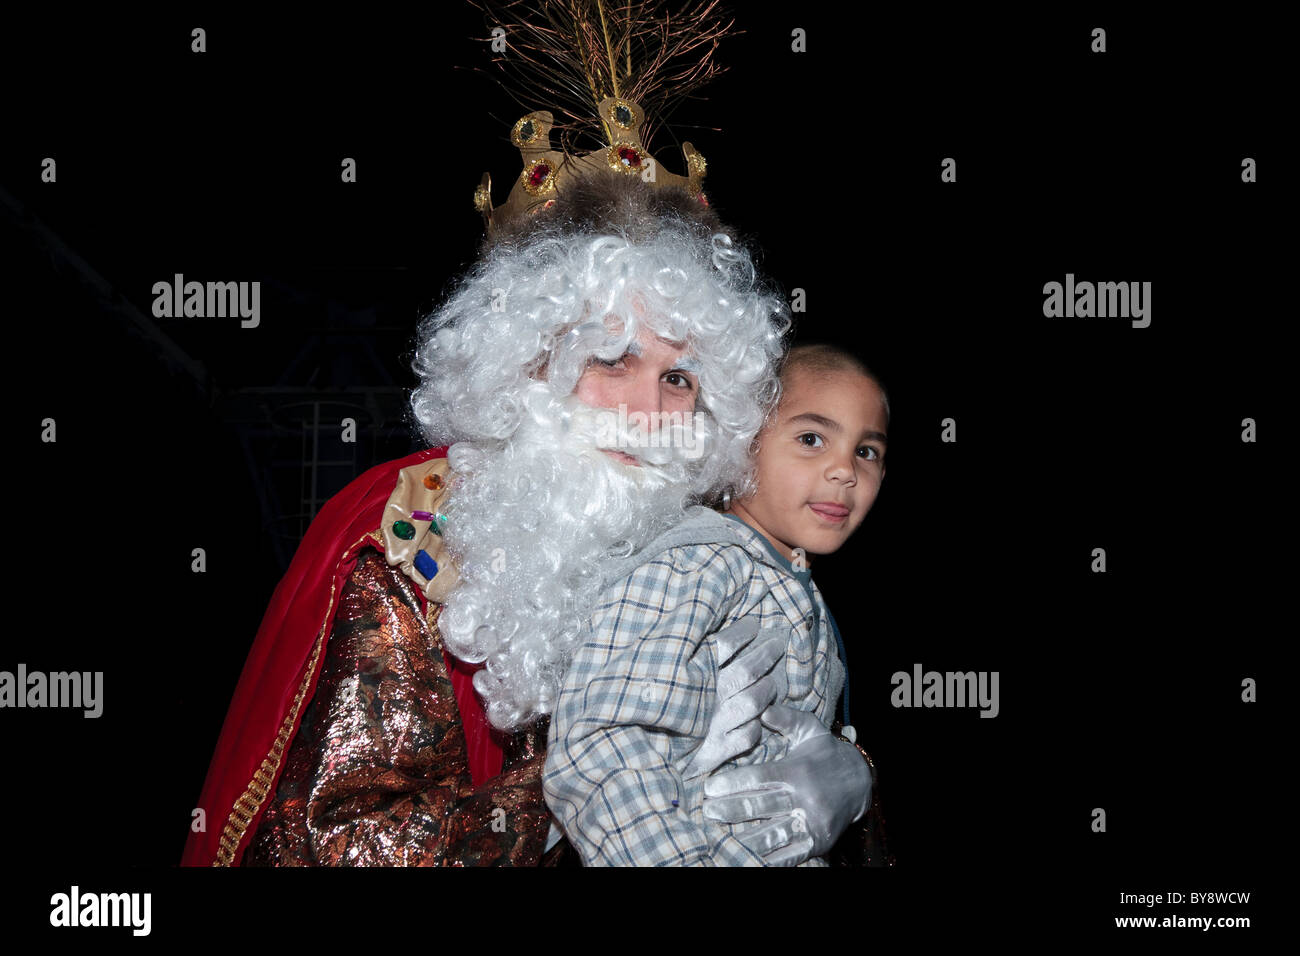 Einer der 3 Könige hält einen kleiner Junge in ein Fest der Erscheinung des Herrn in Teneriffa, Kanarische Inseln, Spanien Stockfoto